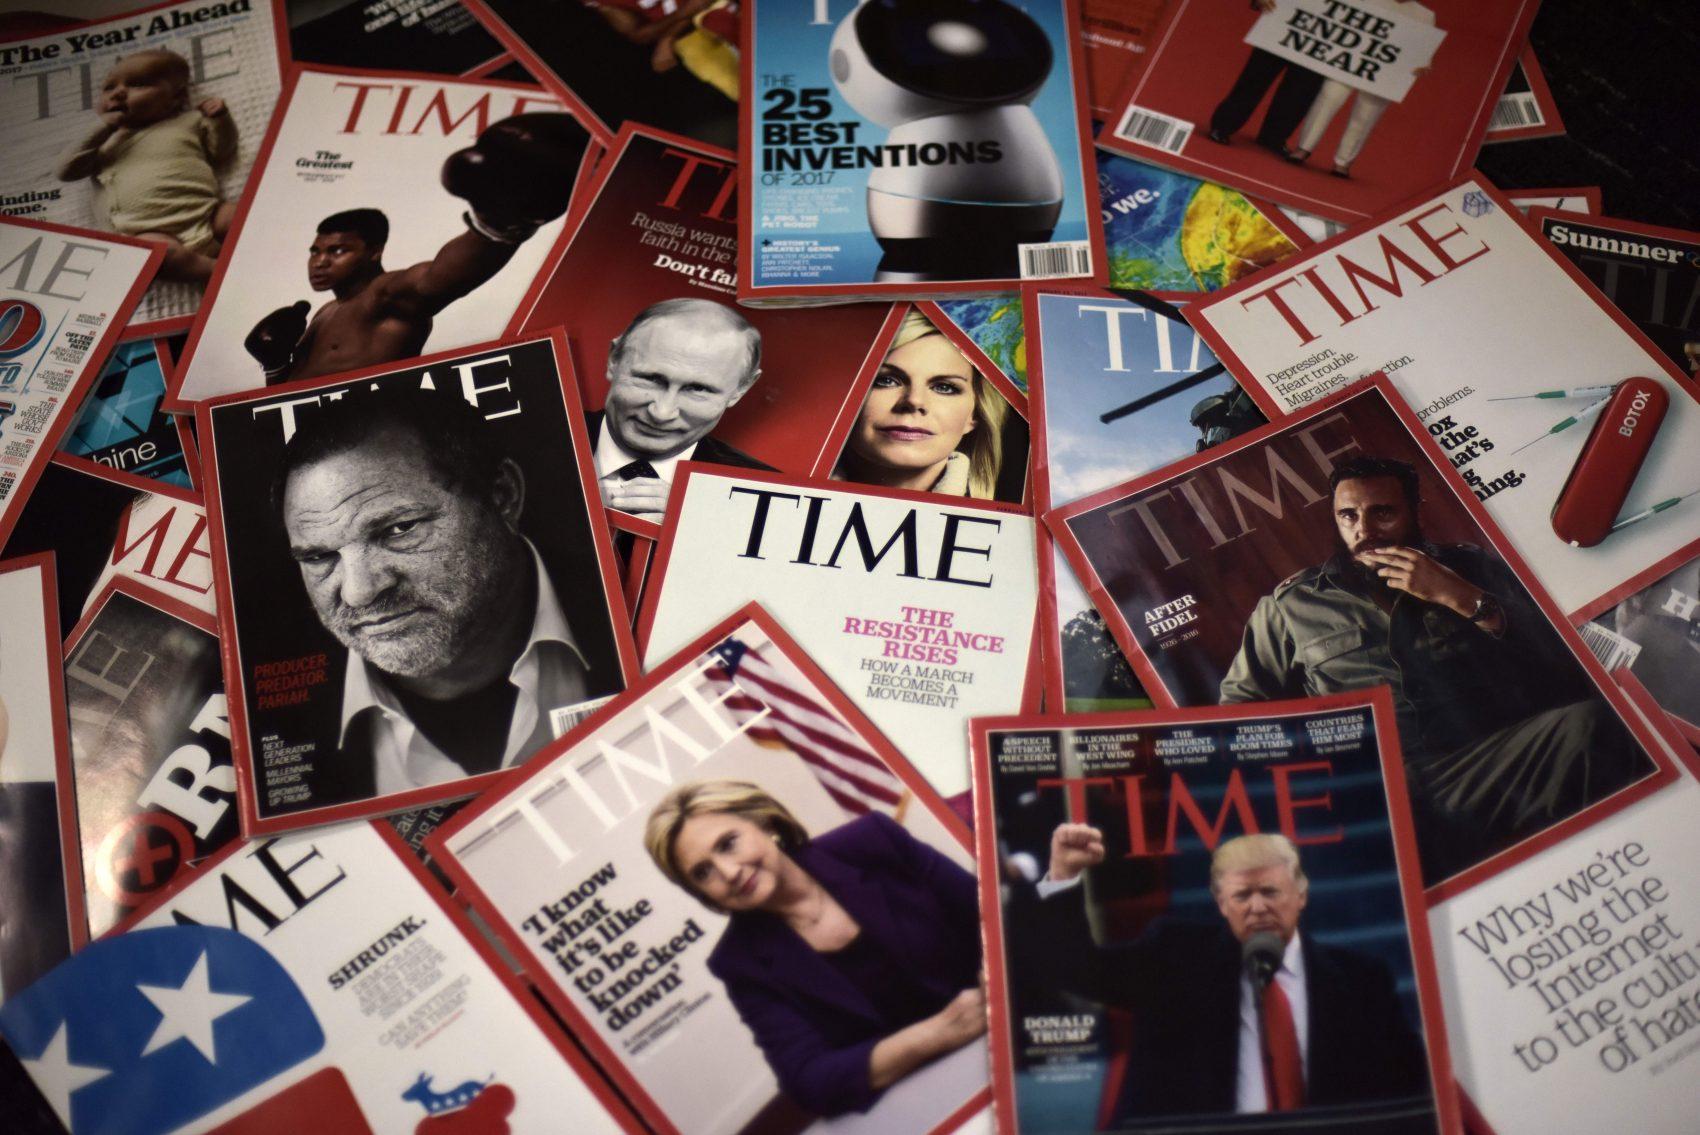 Американський щотижневик Time продають подружжю бізнесменів за $190 млн